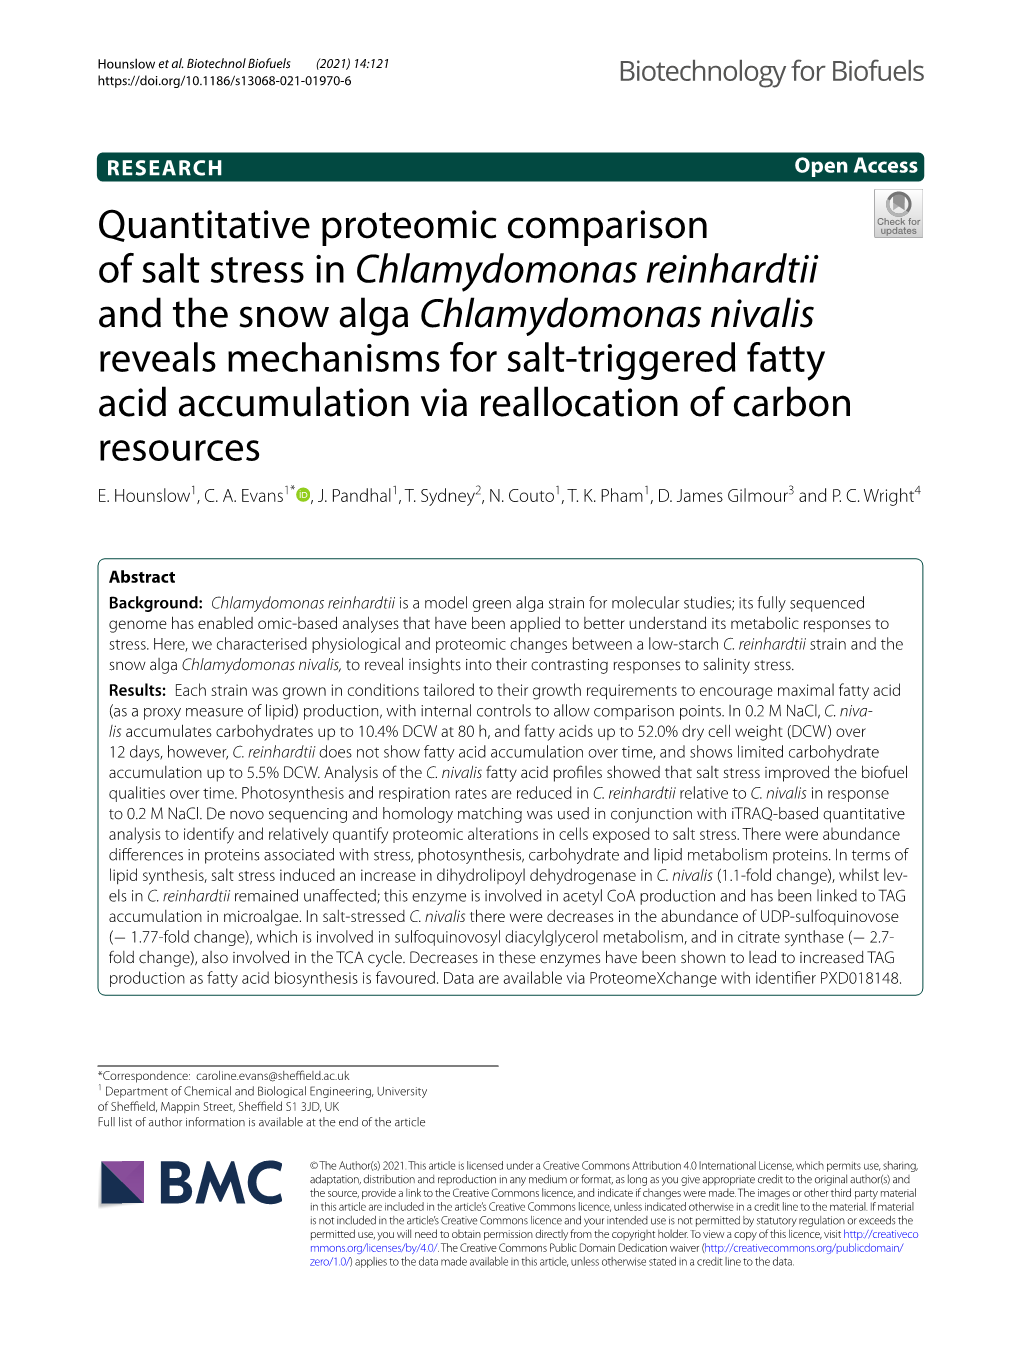 Chlamydomonas Reinhardtii and the Snow Alga Chlamydomonas Nivalis Reveals Mechanisms for Salt‑Triggered Fatty Acid Accumulation Via Reallocation of Carbon Resources E